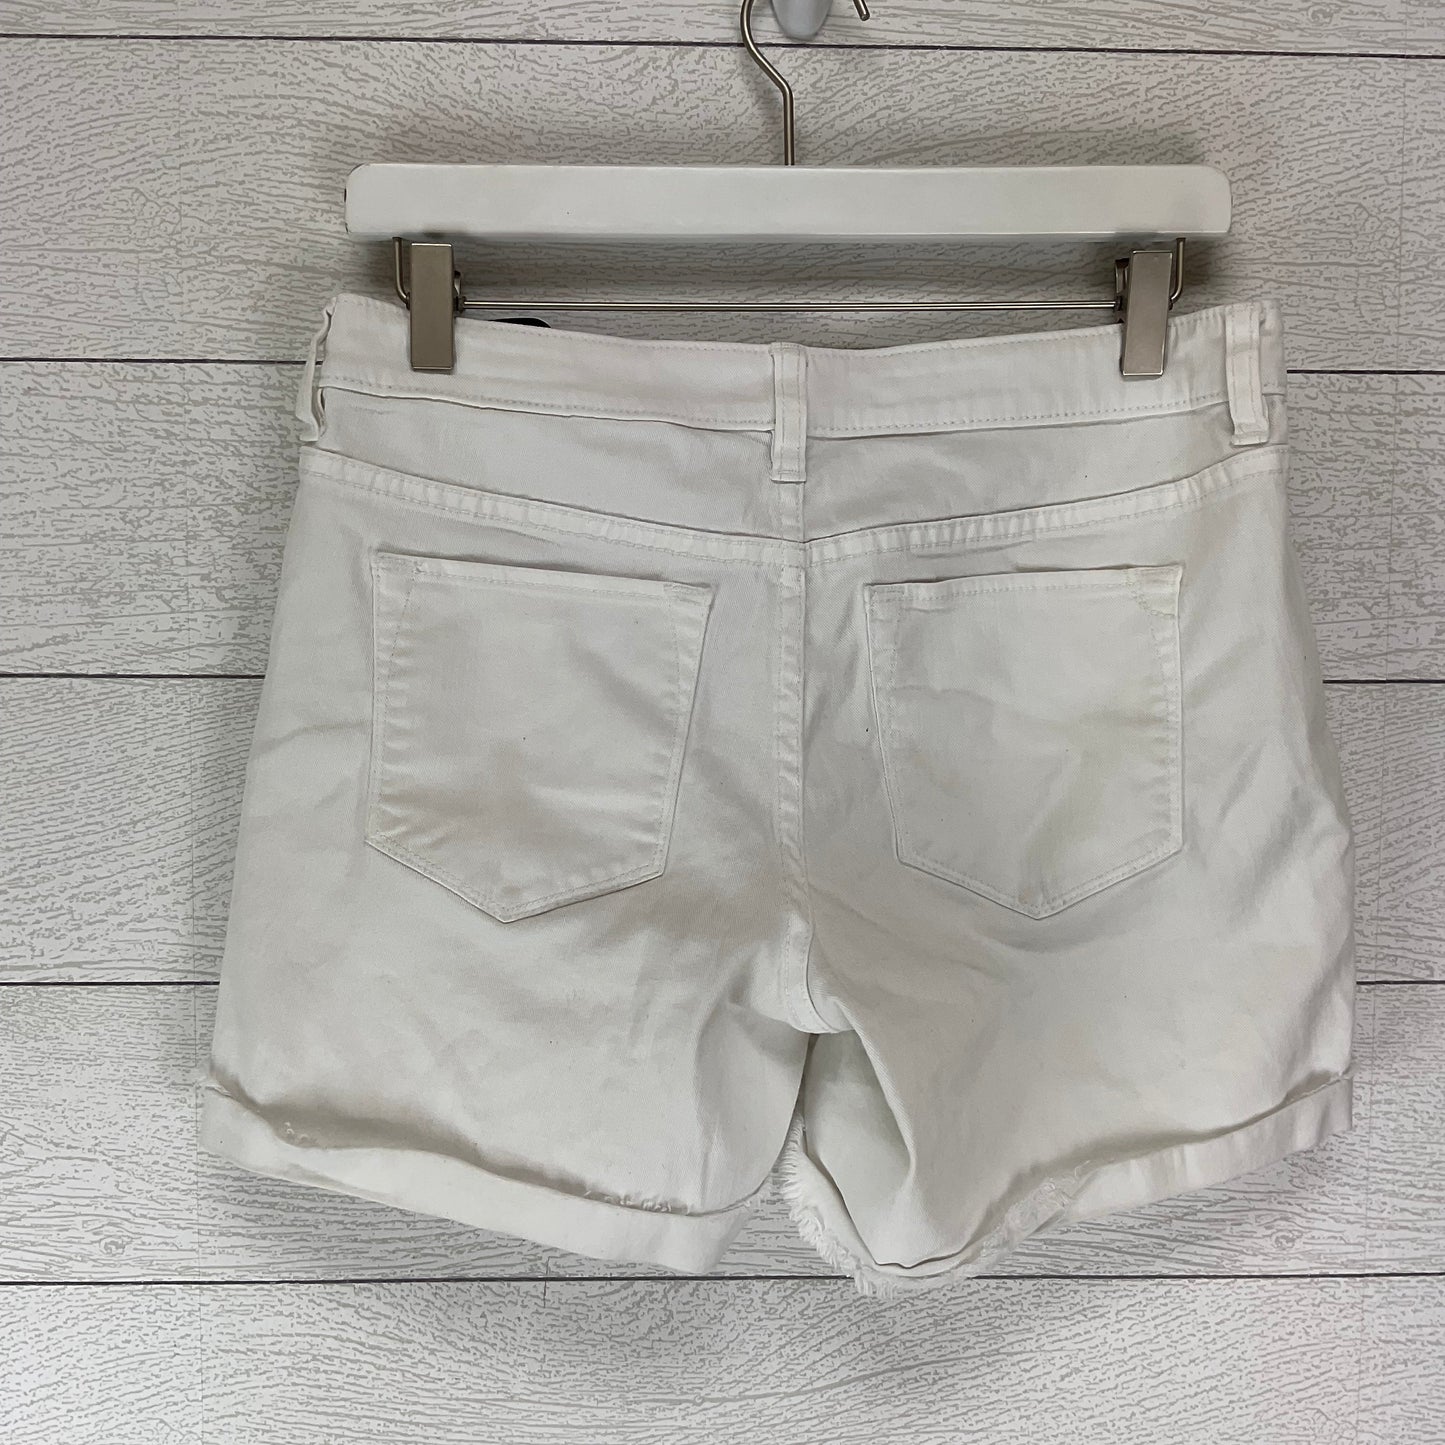 White Shorts Tommy Bahama, Size 6